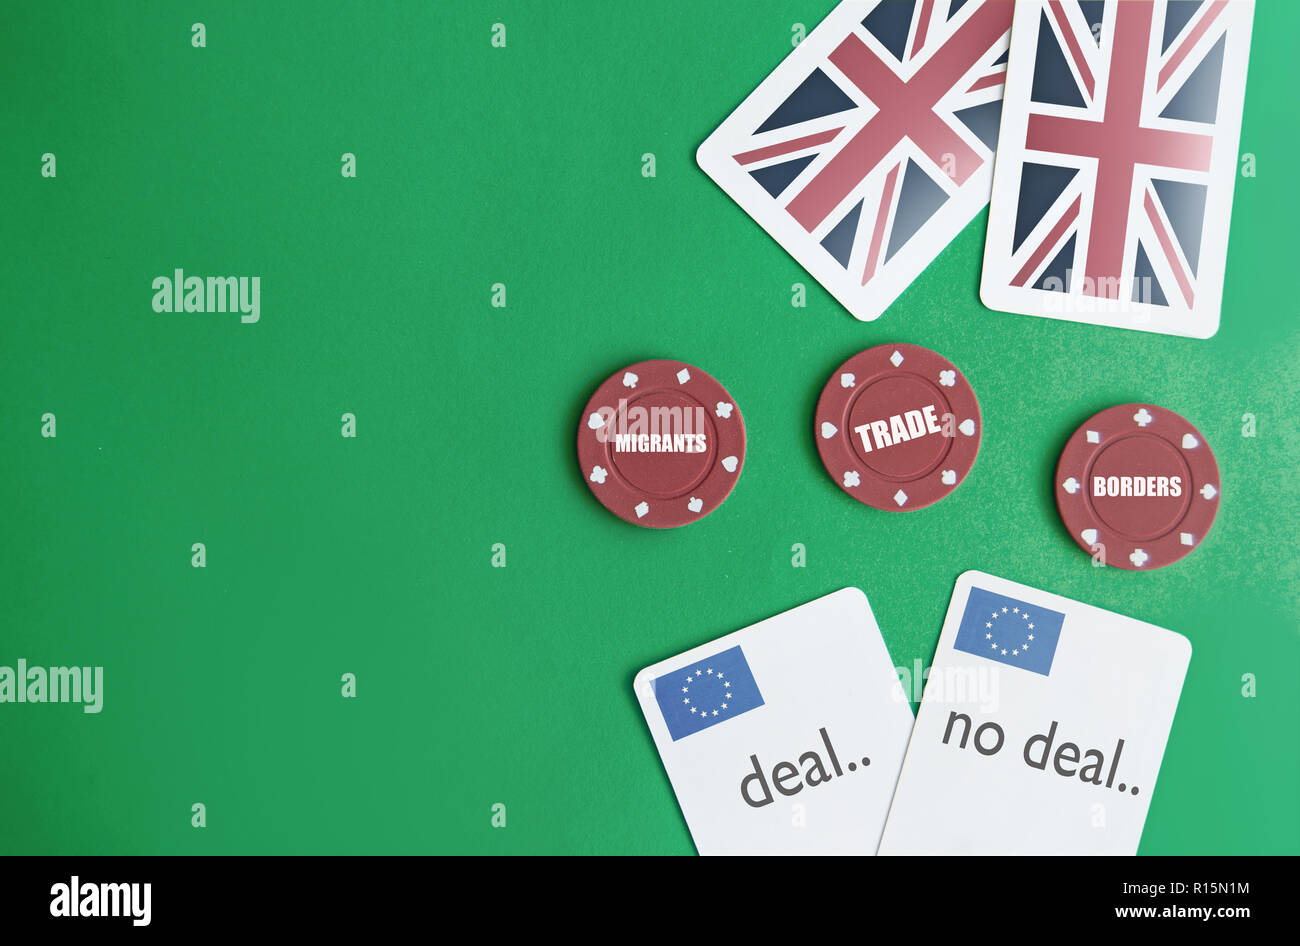 Poker spiel mit Verhandlungsmasse einschließlich der Migranten, Handel und Grenzen Stockfoto